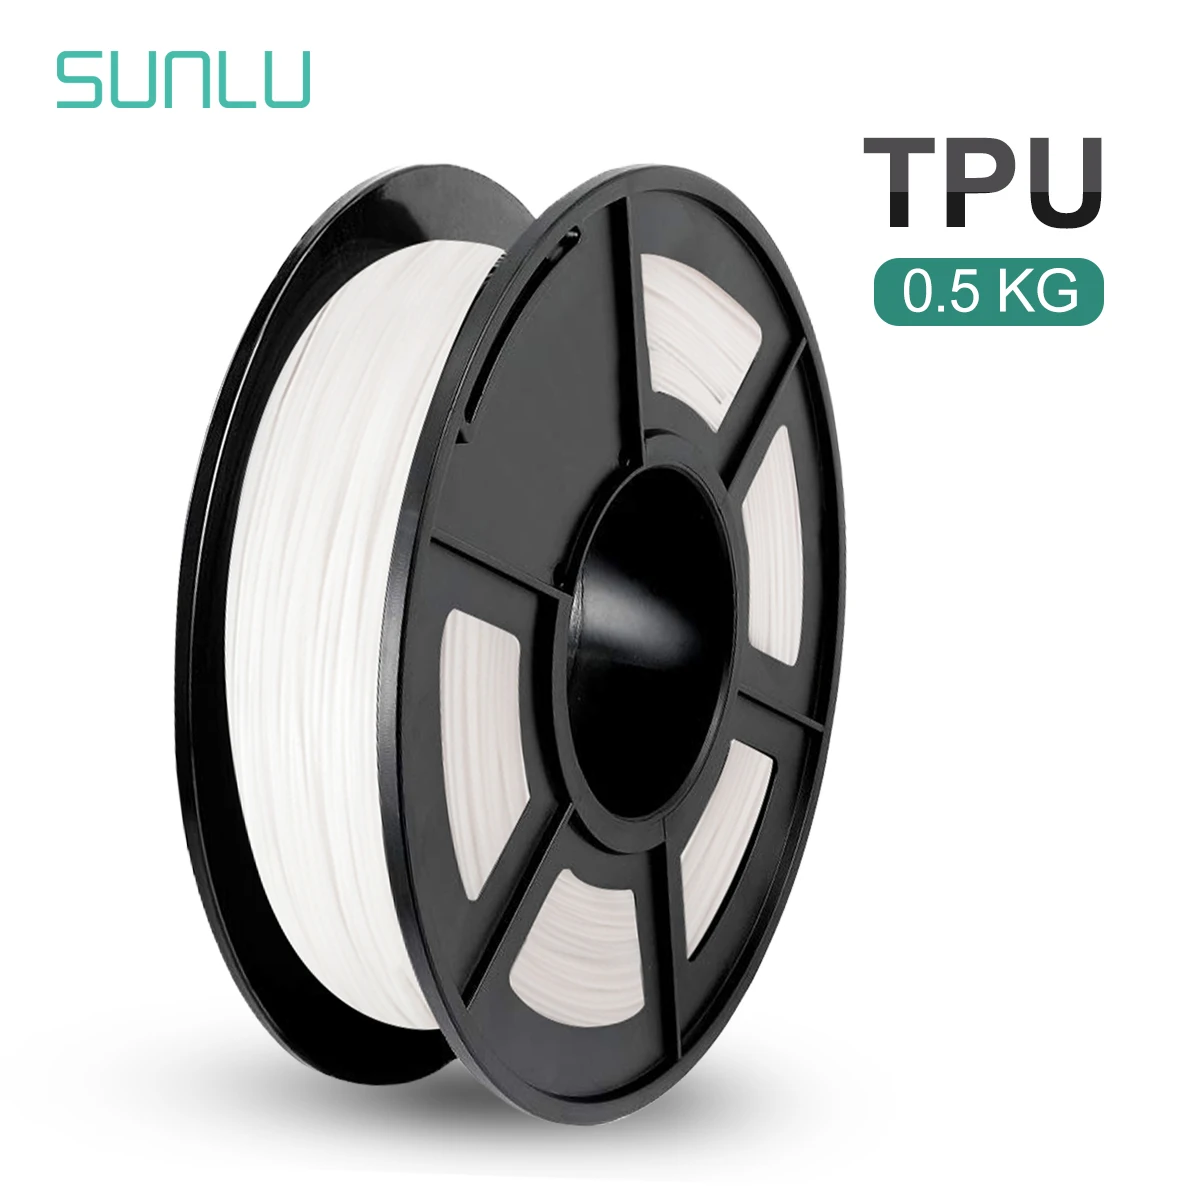 SUNLU ТПУ Гибкая нить 1 75 мм высокоэластичная для 3d принтера 0 5 кг Быстрая доставка |